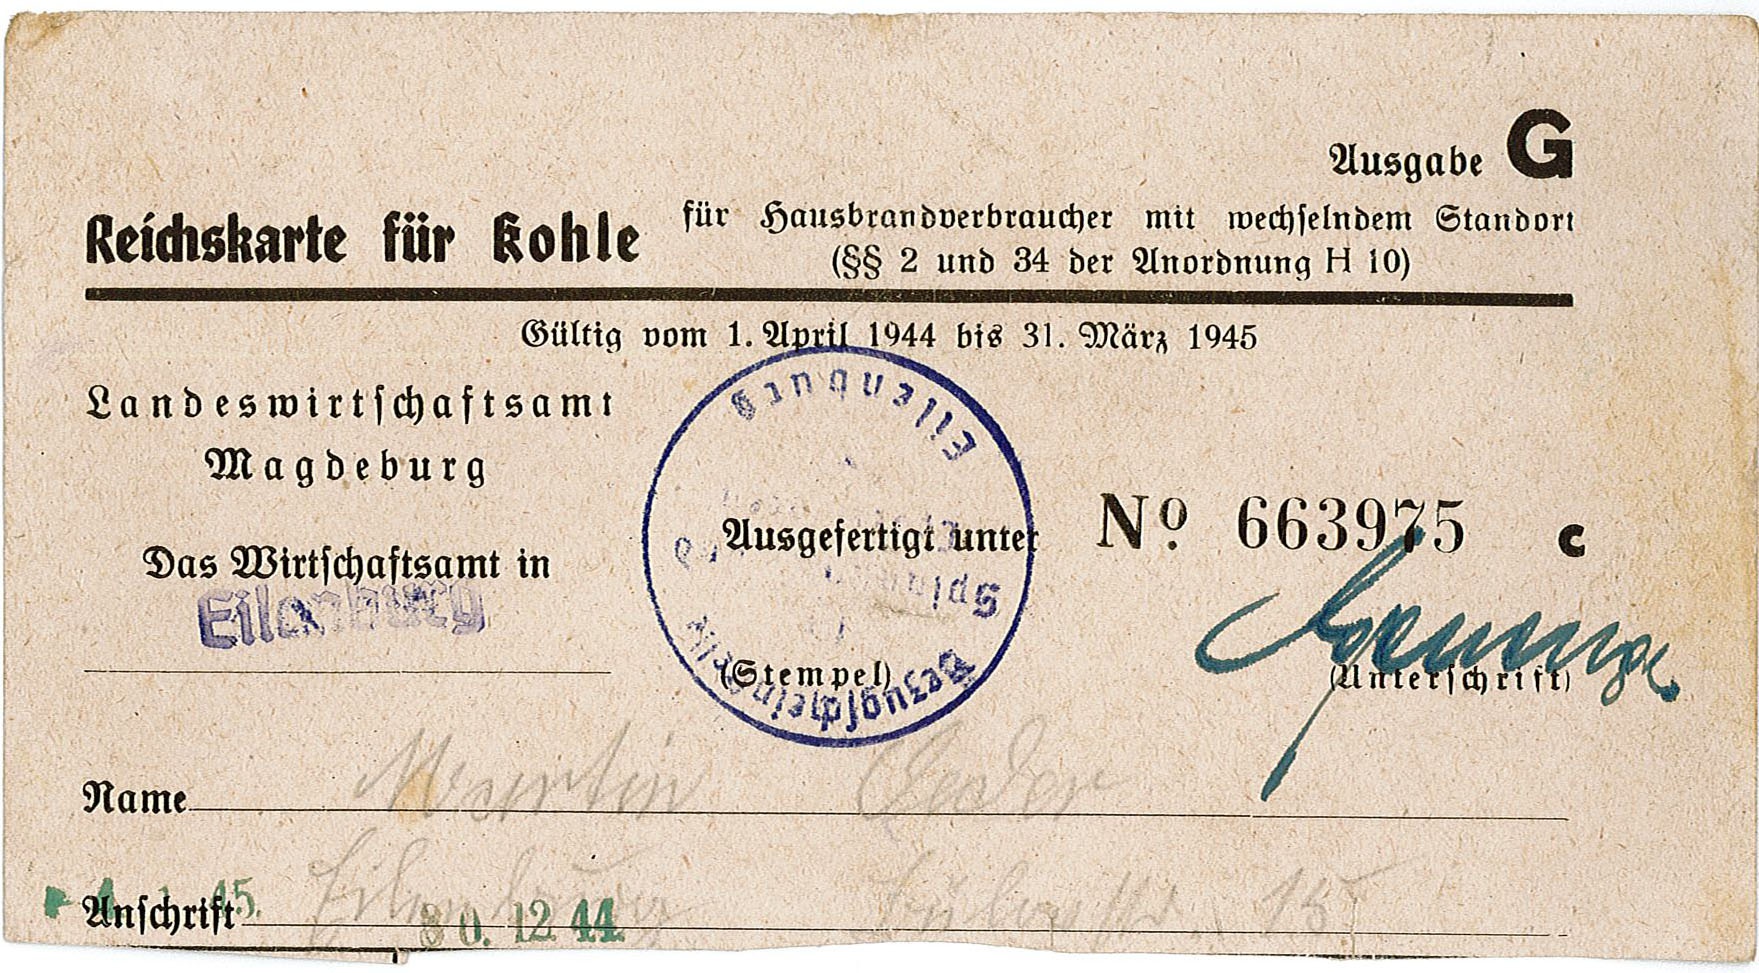 Reichskarte für Kohle von Martin Oeder, 1944/1945 (Museum Wolmirstedt RR-F)